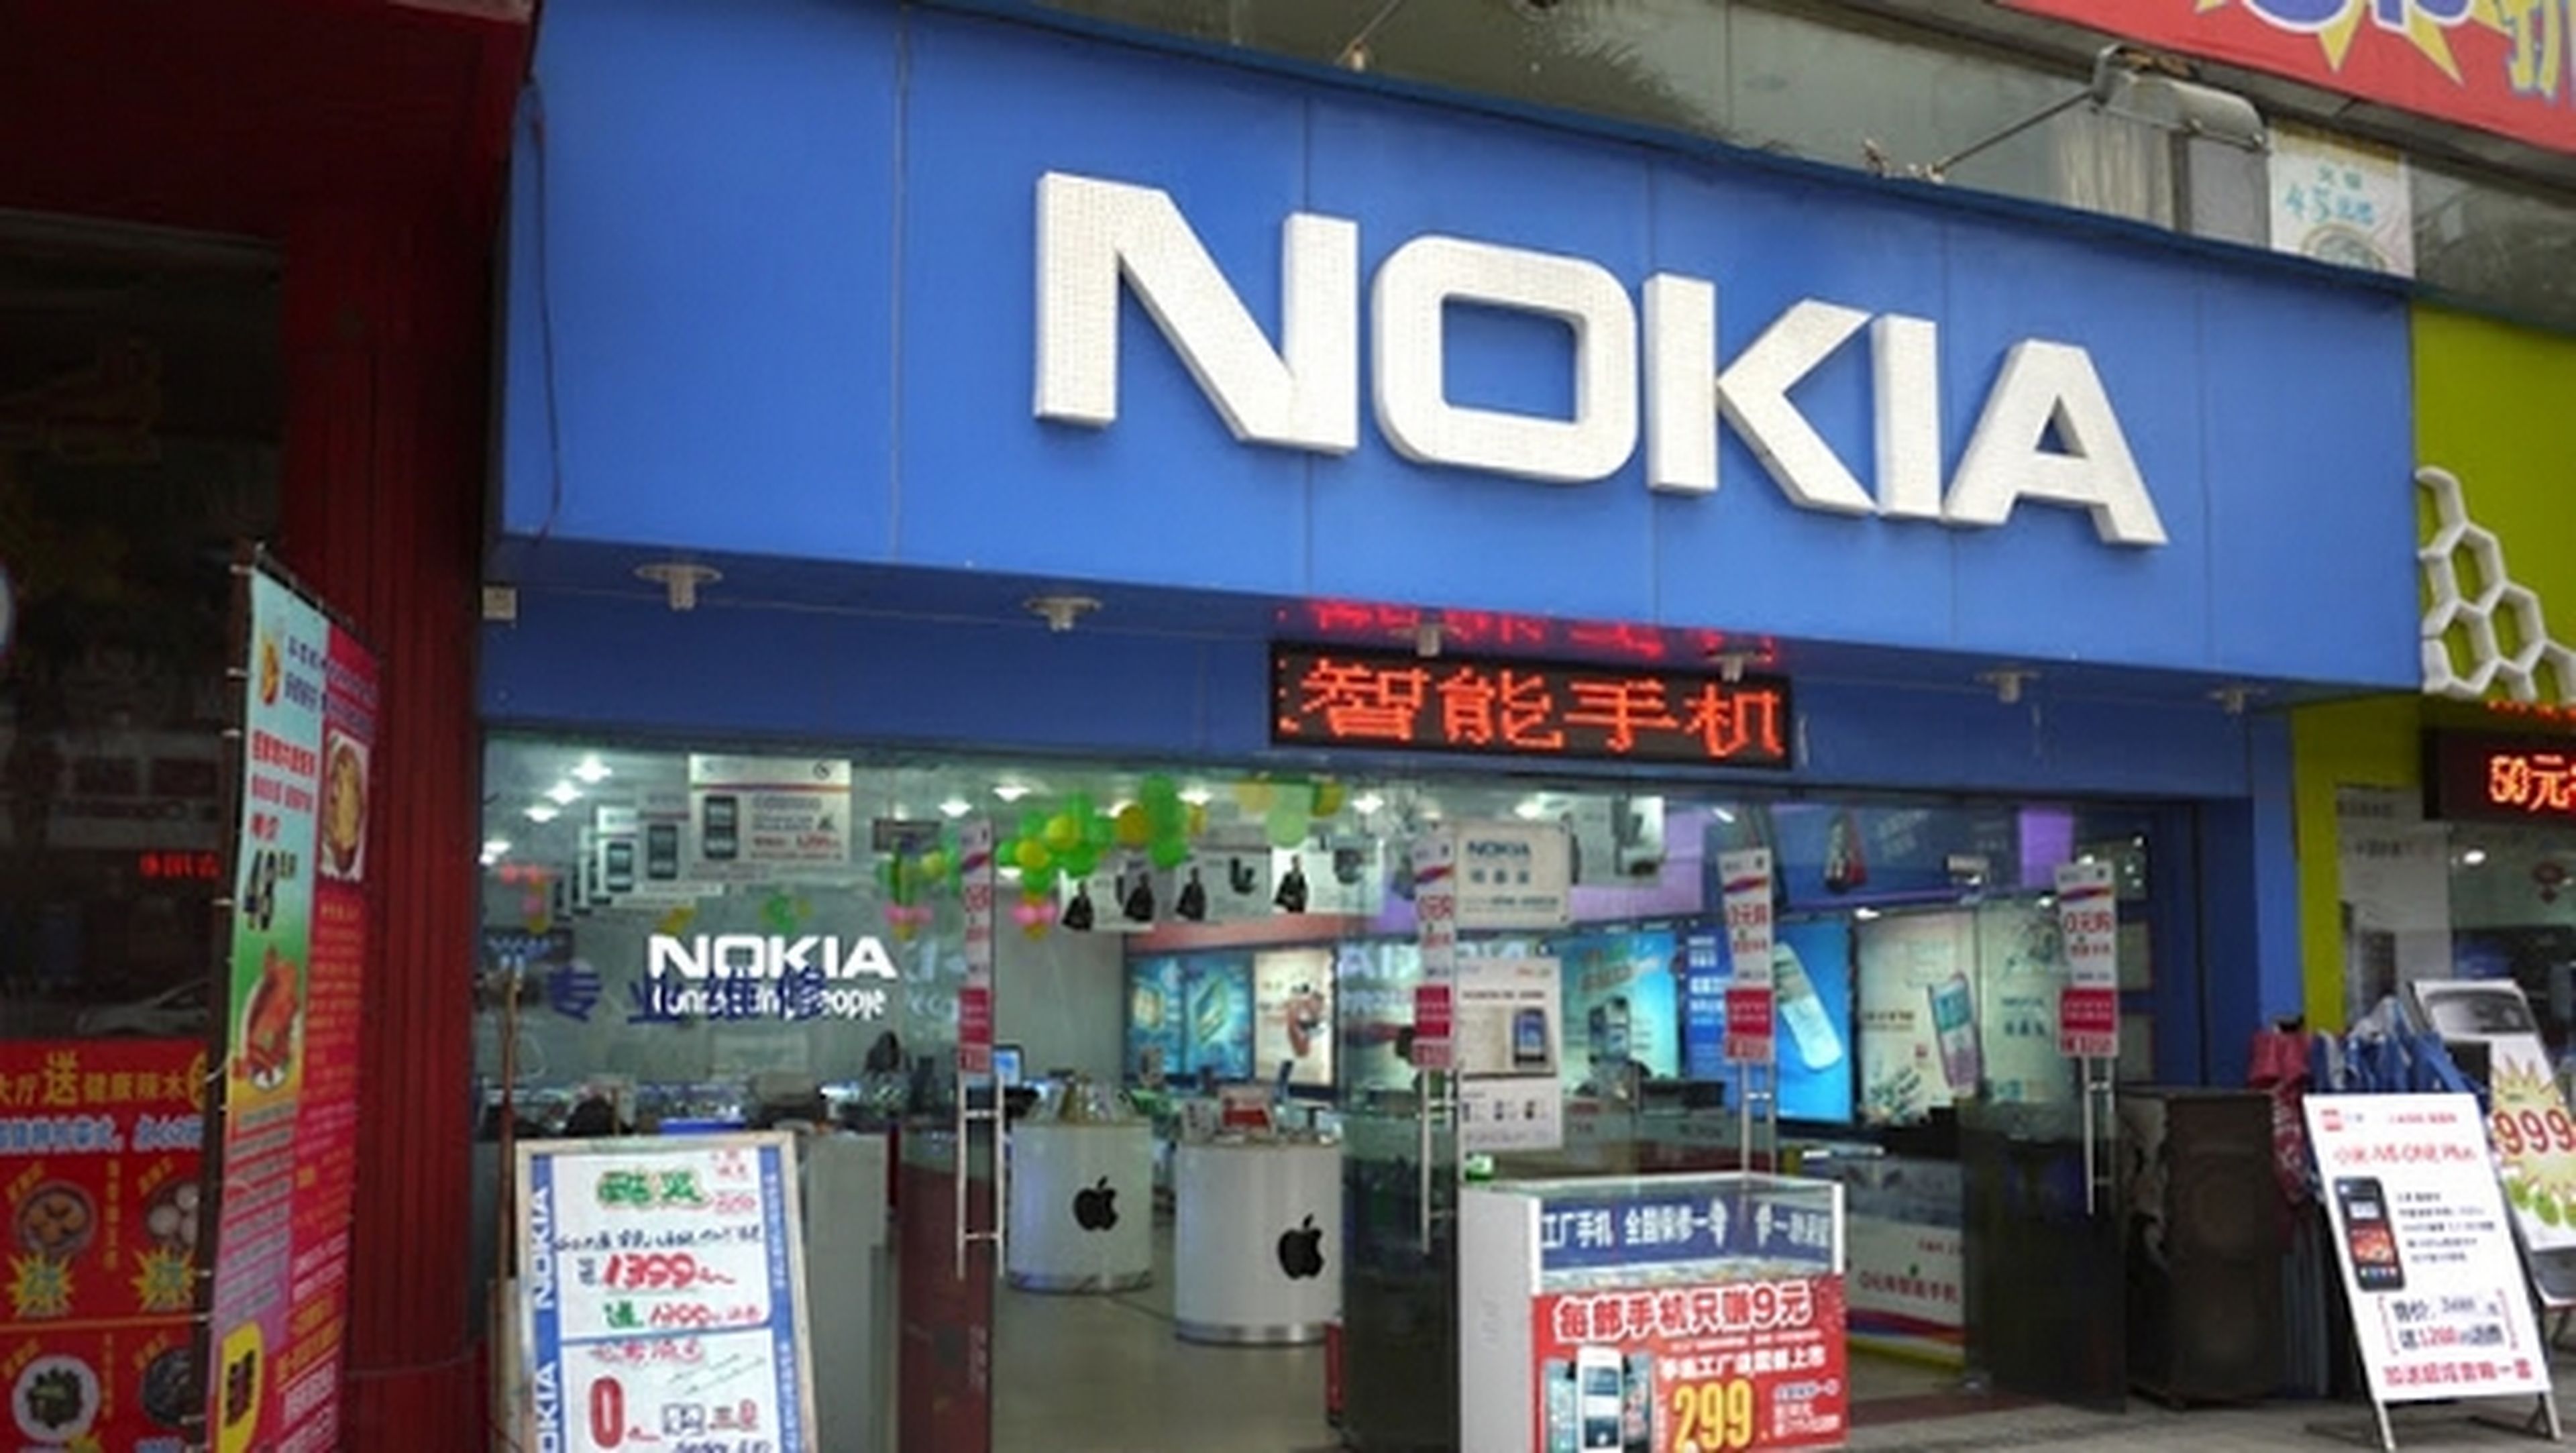 Microsoft regala smartphones Nokia Lumia 630 a los empleados que acepten el despido en China, de forma voluntaria.